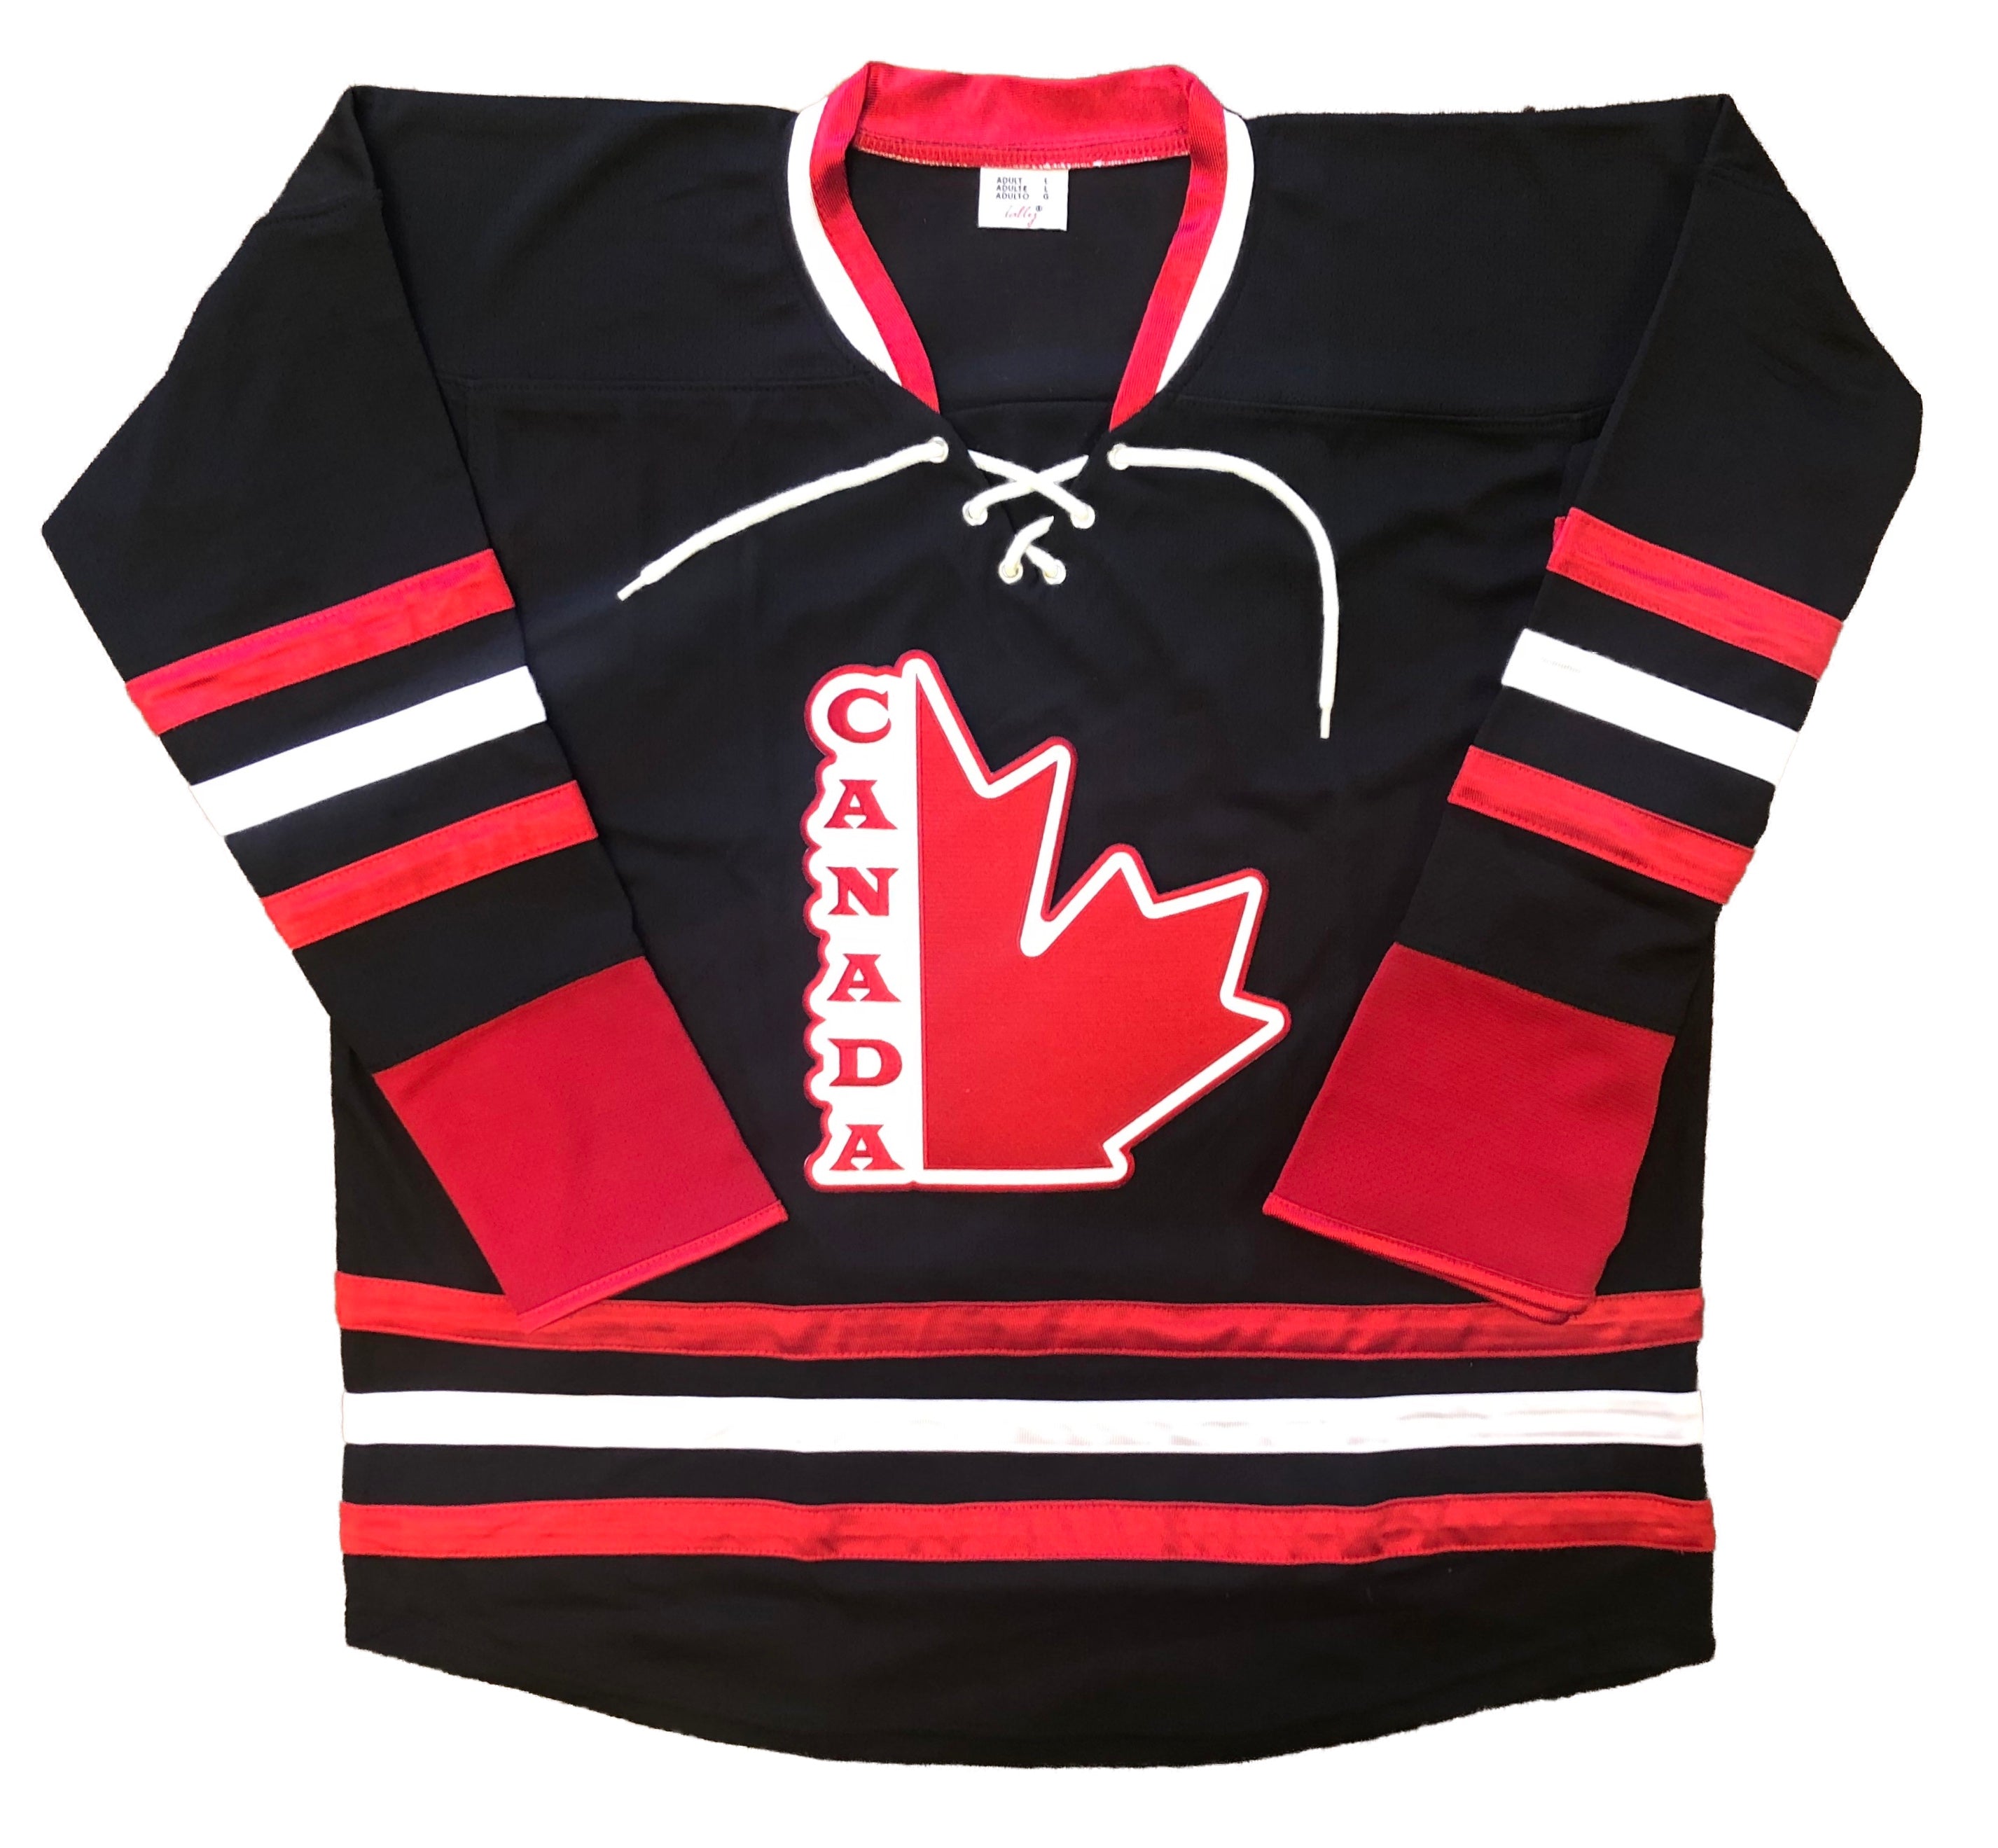 Custom Hockey Jerseys Order Any Quantity 